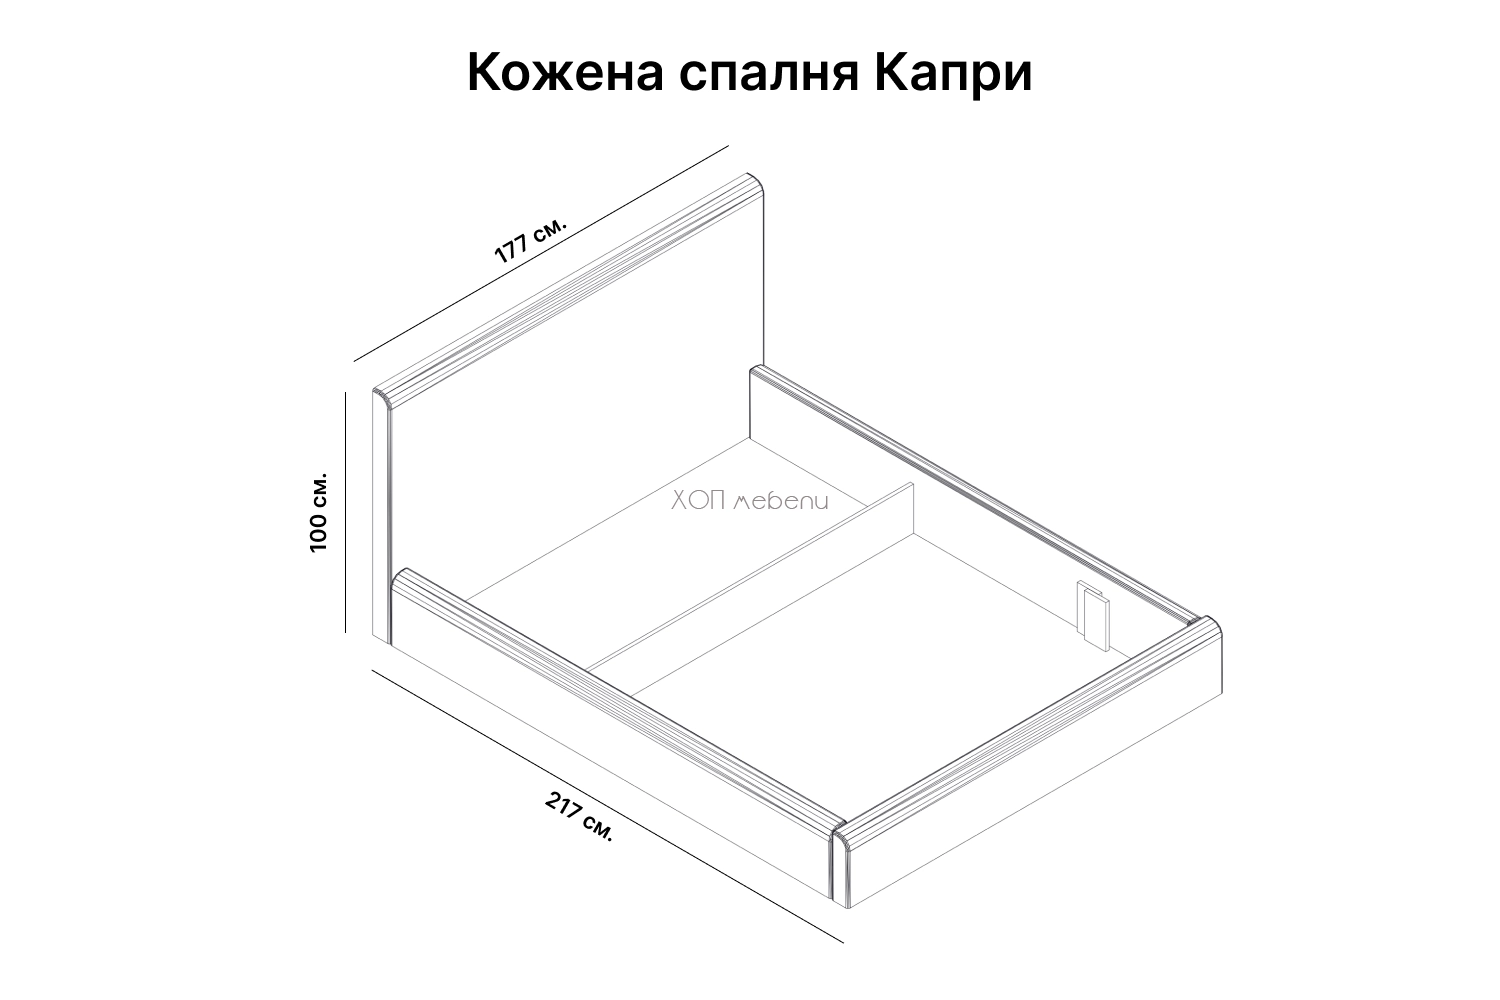 Размери на Кожена спалня Капри ID 1058